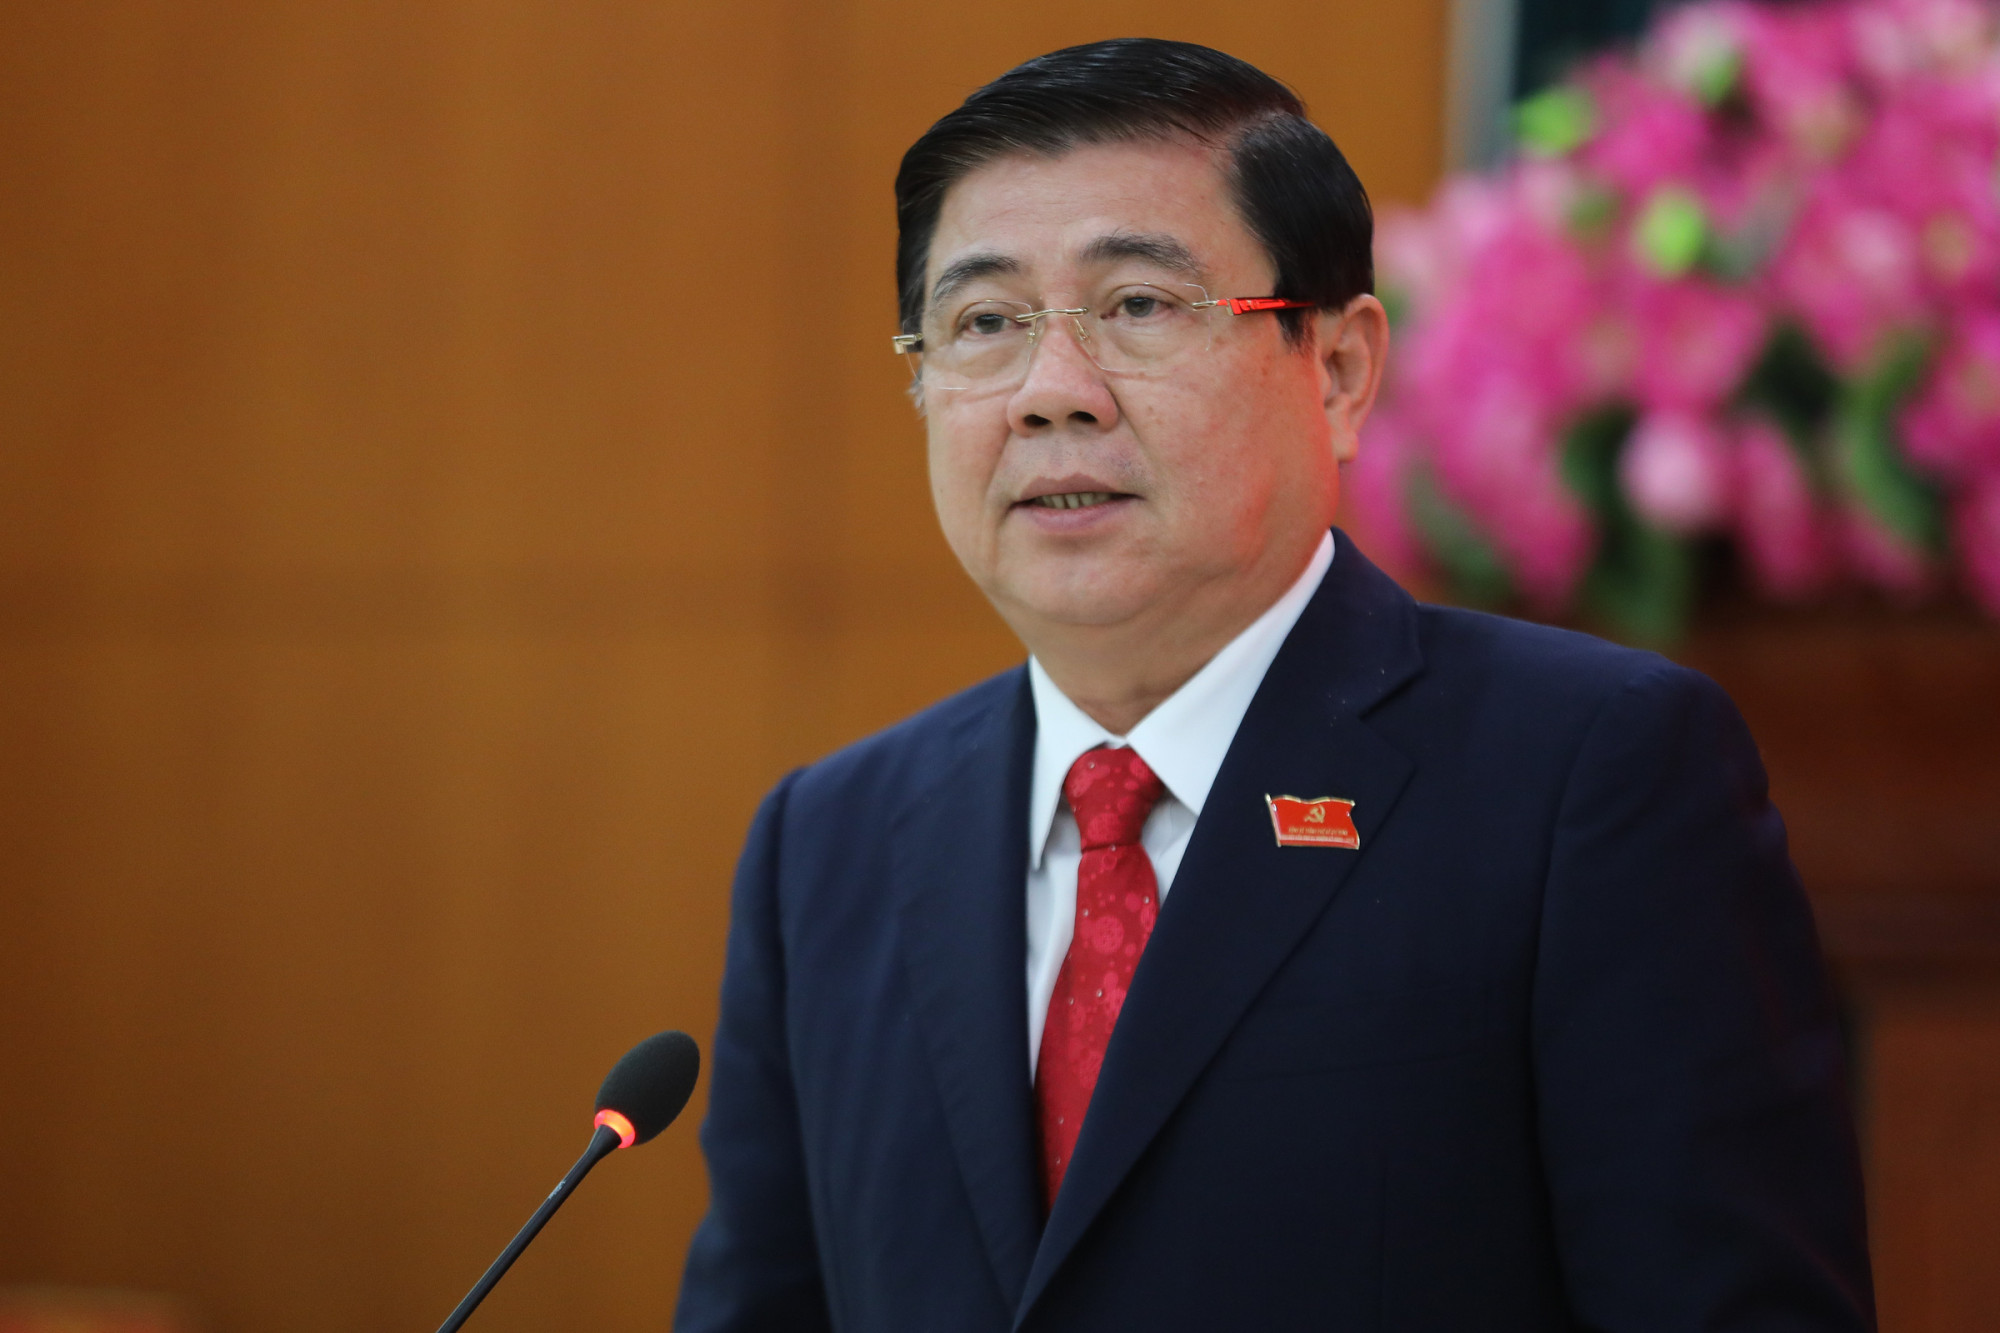 Bộ Chính trị thi hành kỷ luật cảnh cáo đối với Ban cán sự đảng UBND TP.HCM nhiệm kỳ 2016 - 2021 và ông Nguyễn Thành Phong.